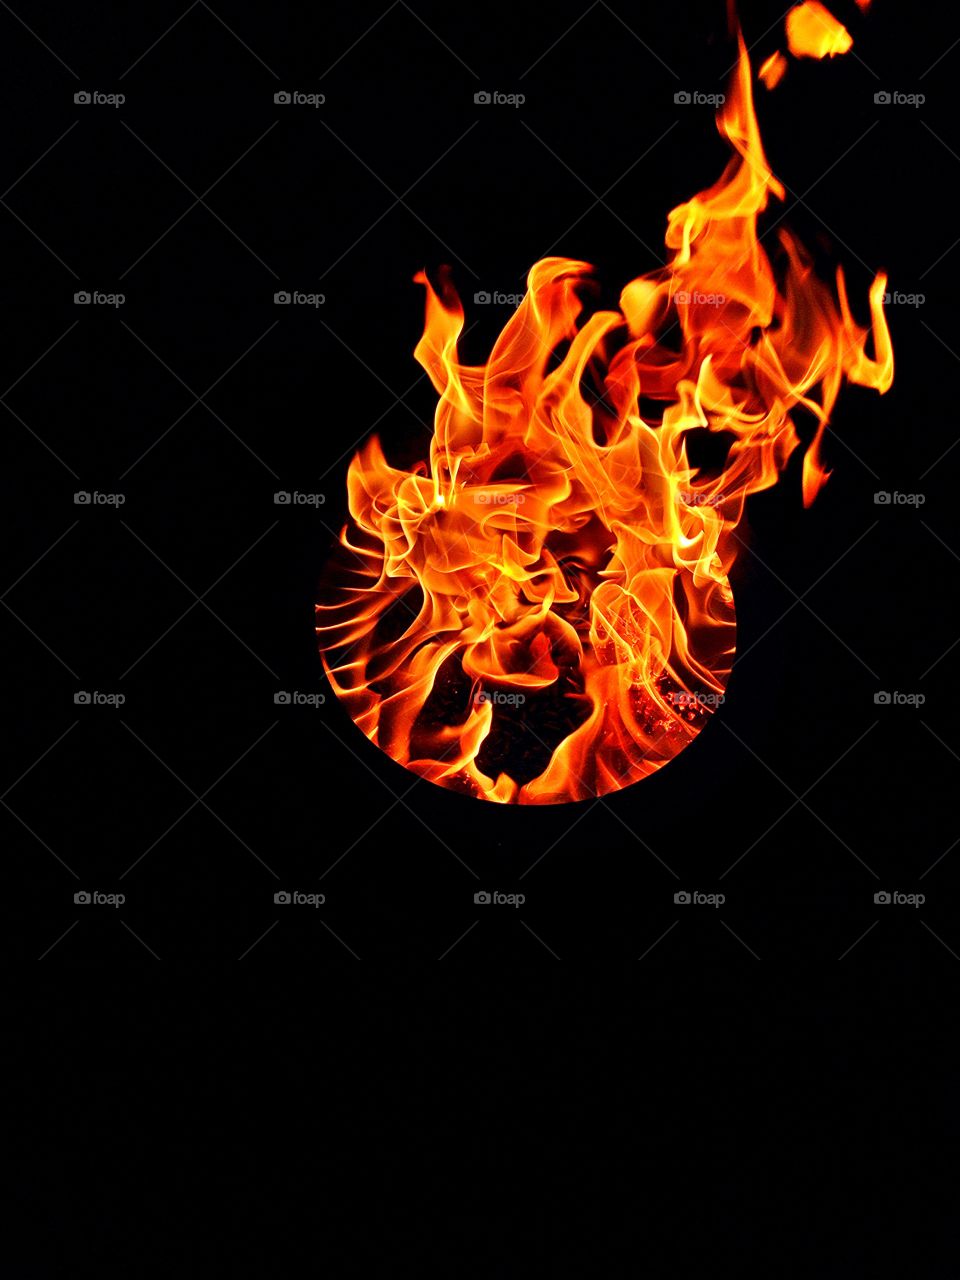 Burning flames against black background